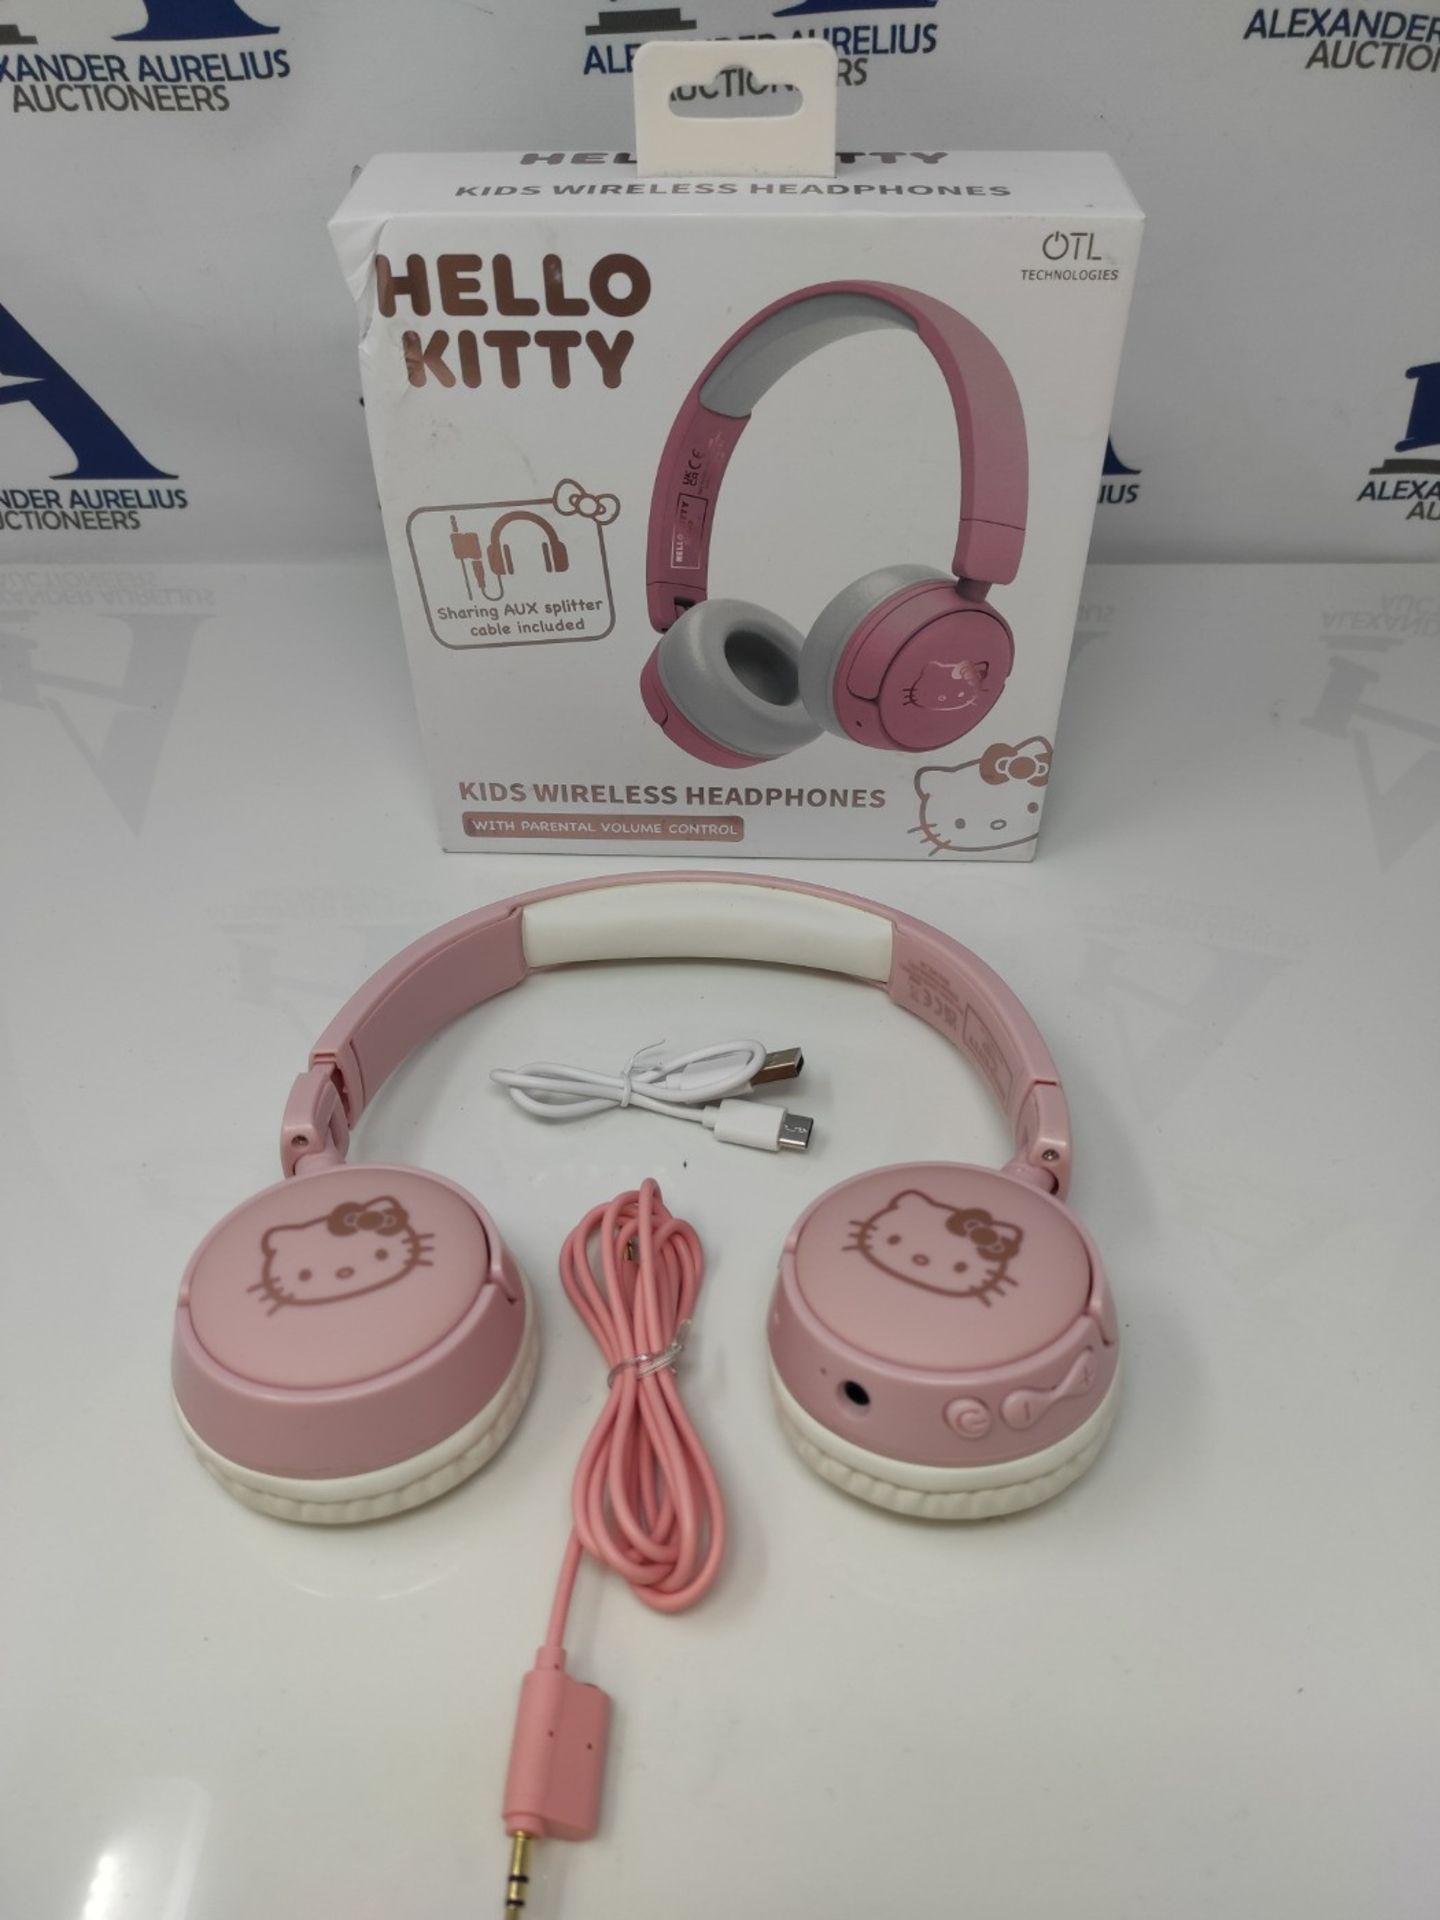 OTL Technologies HK0991 Hello Kitty Kids Wireless Headphones - Pink - Bild 2 aus 3